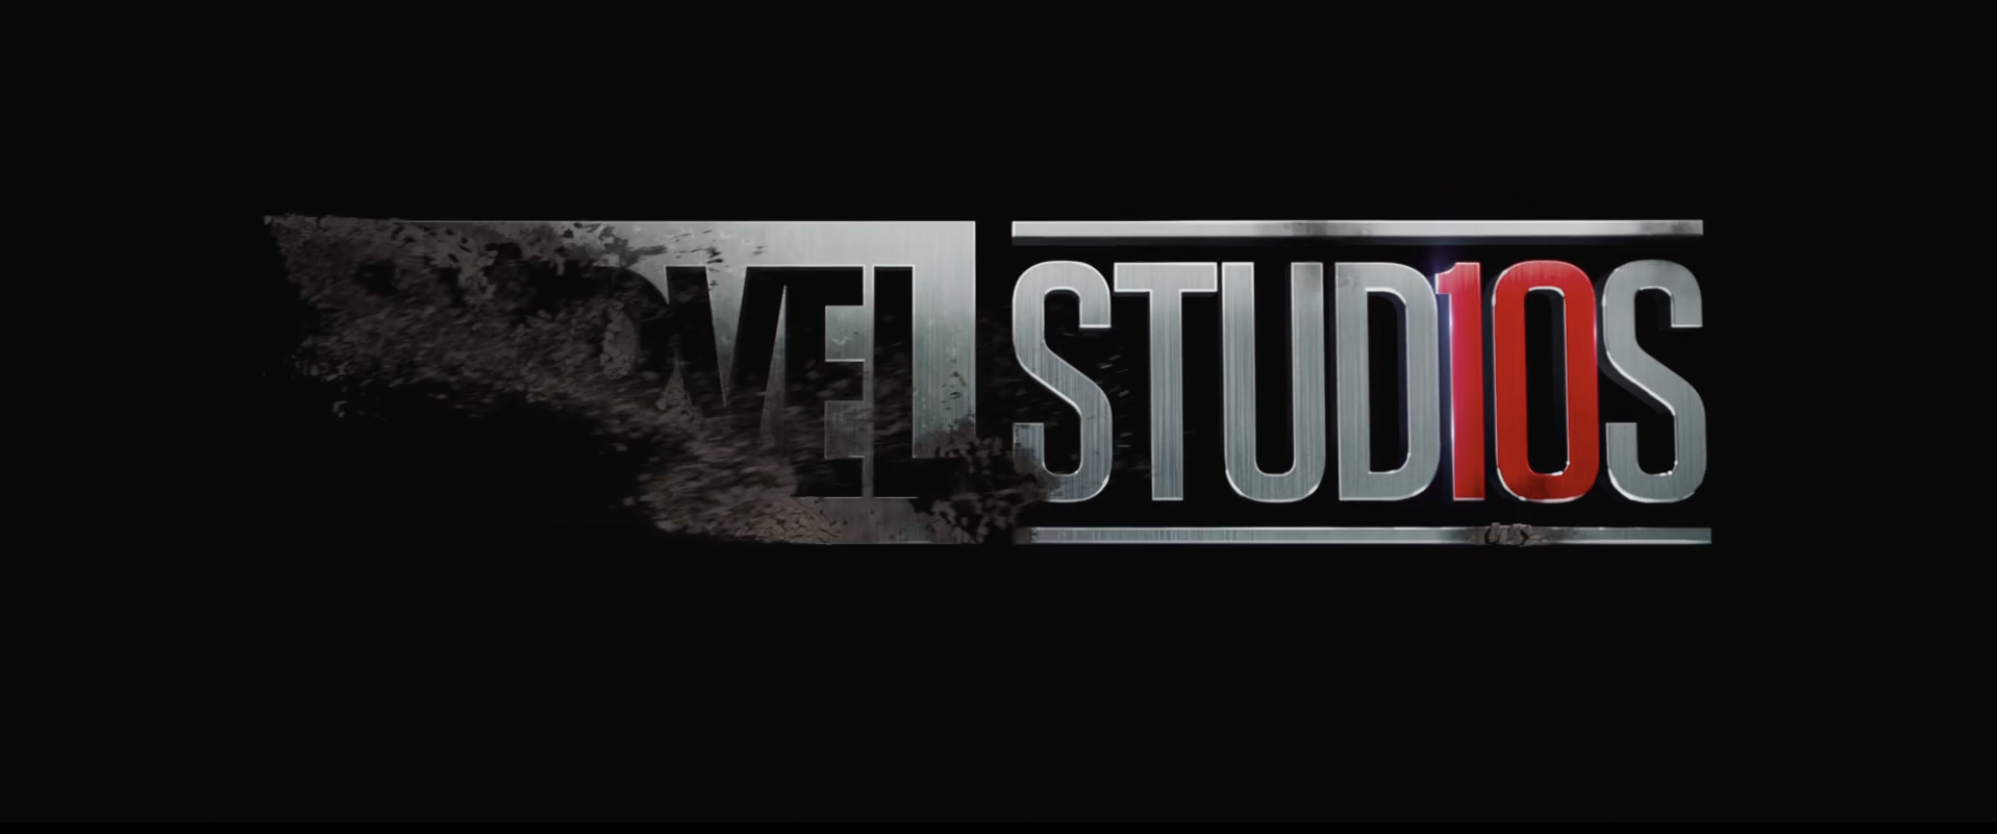 Avengers Endgame Trailer Marvel